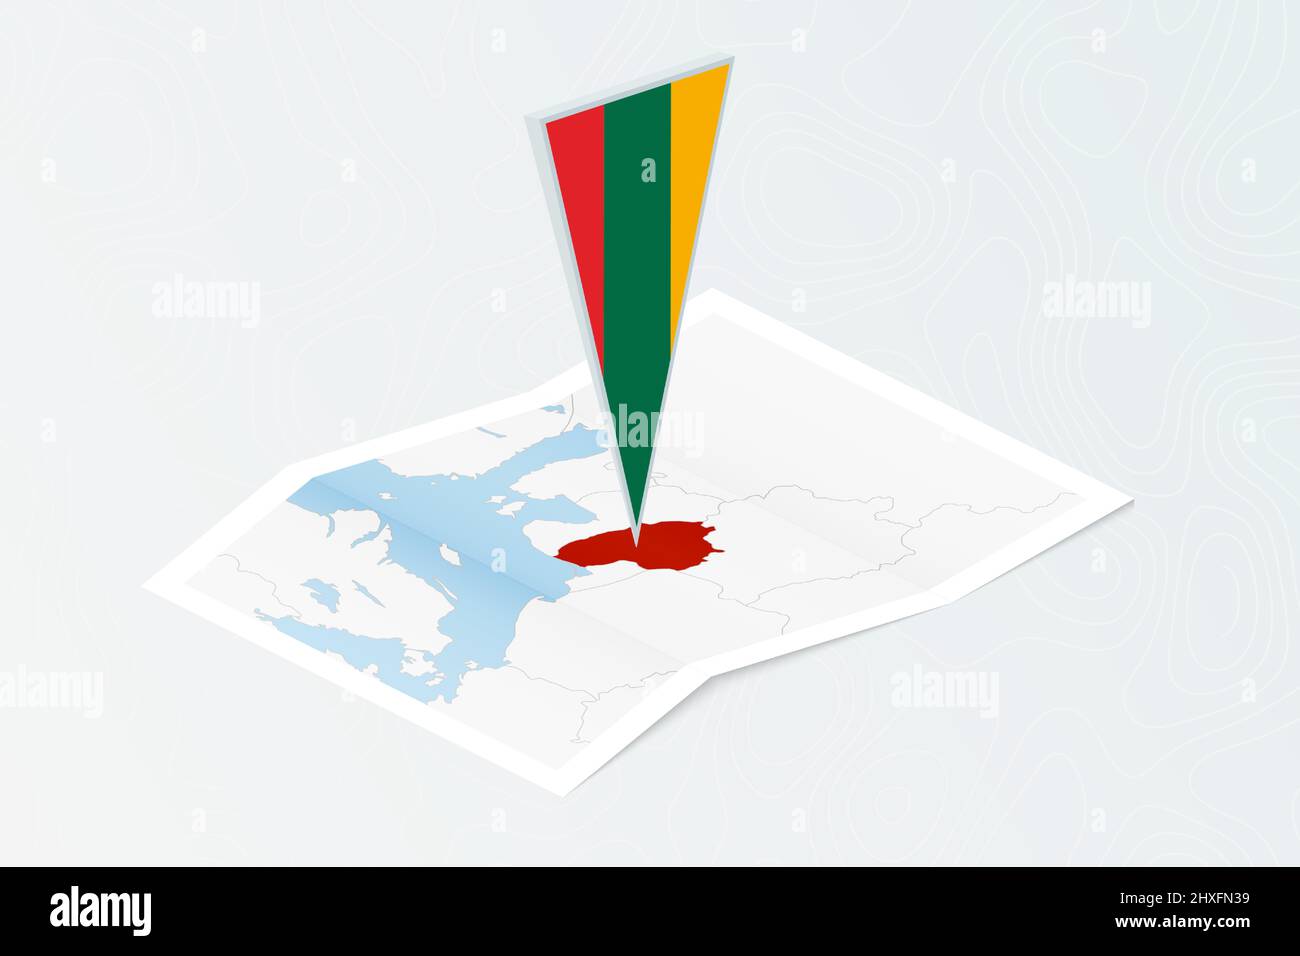 Carta isometrica della Lituania con bandiera triangolare della Lituania in stile isometrico. Mappa su sfondo topografico. Illustrazione vettoriale. Illustrazione Vettoriale